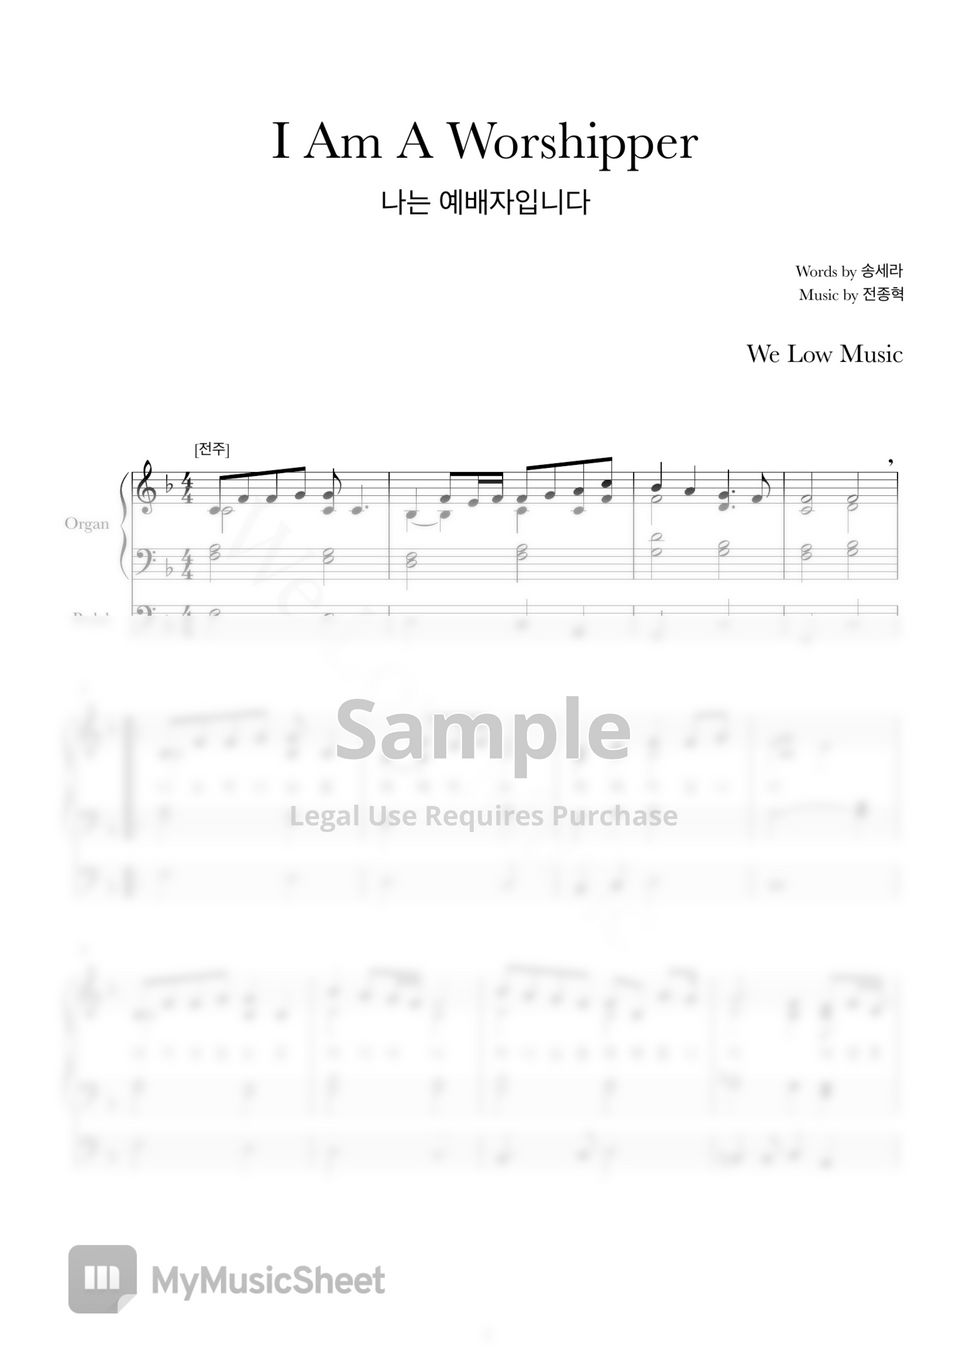 송세라, 전종혁 - 나는 예배자입니다 (오르간 회중 찬양 (피아노 악보 포함)) by We Low Music